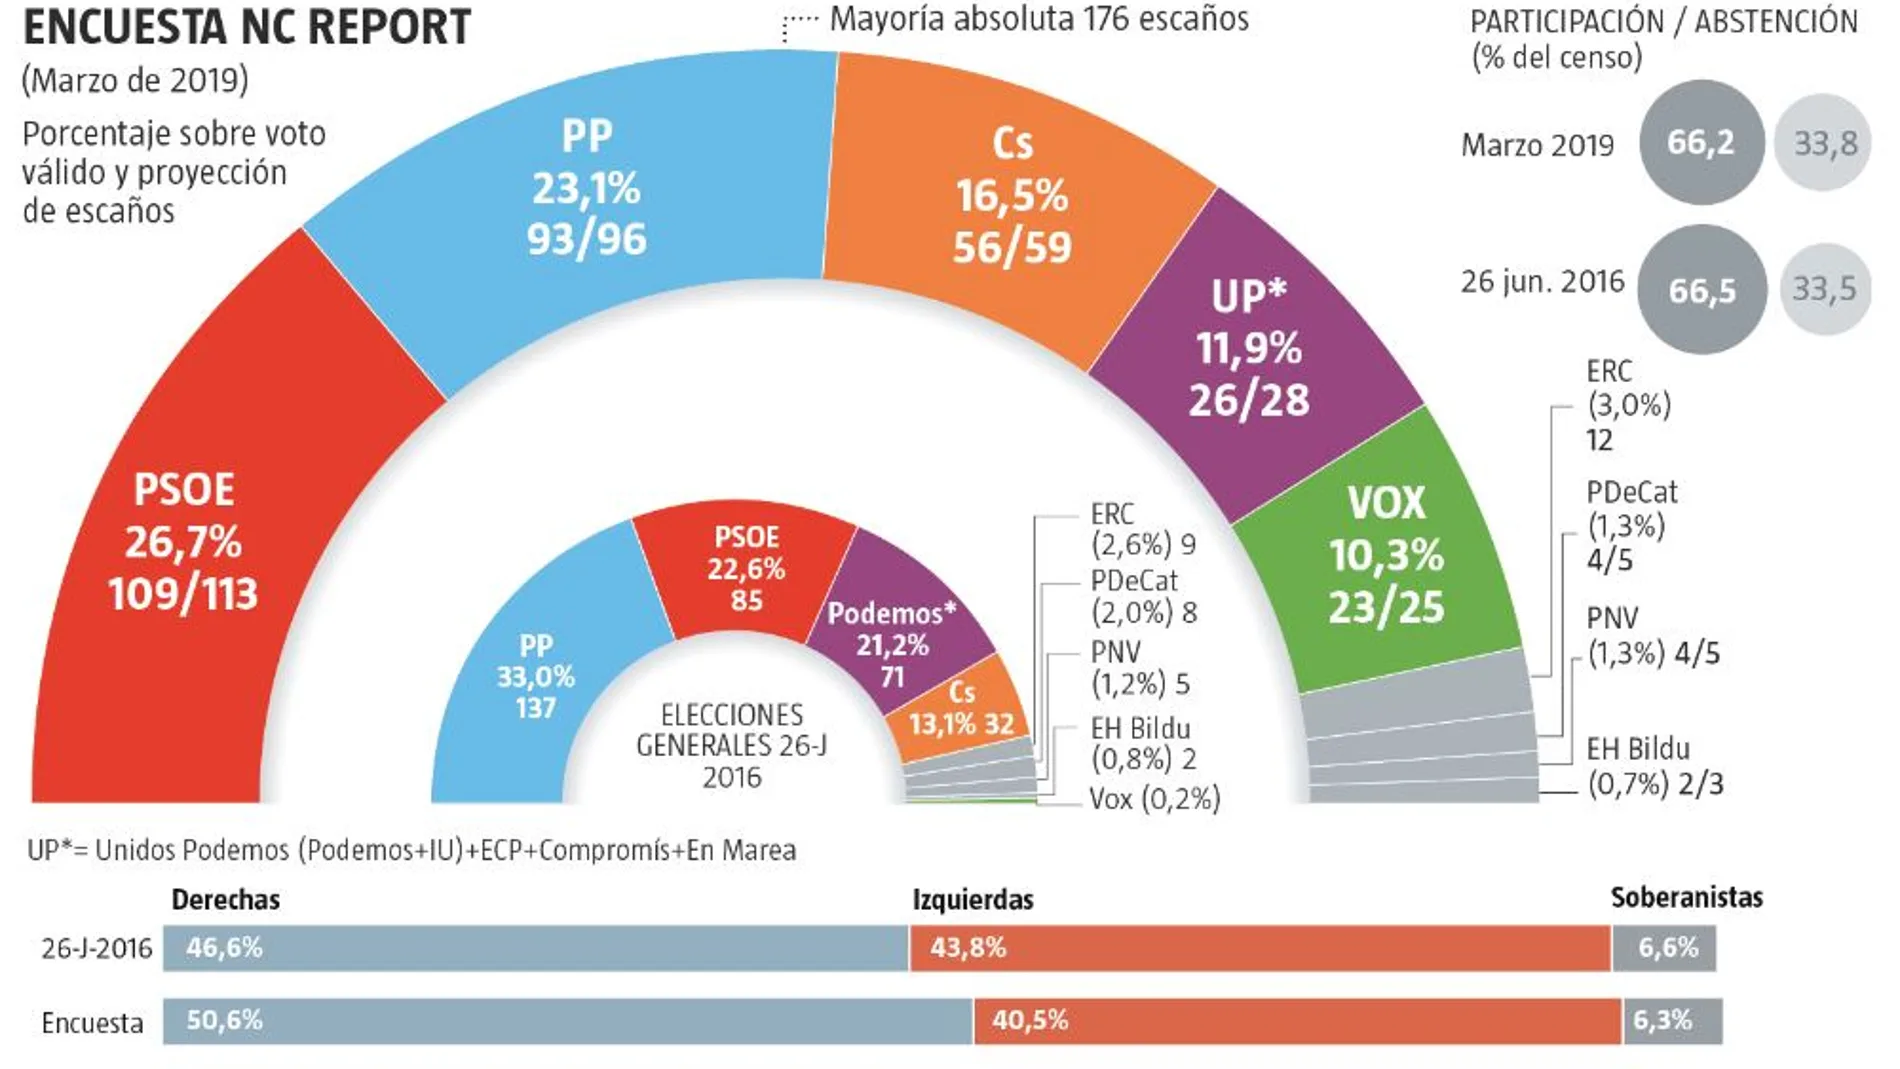 PP y PSOE suben entre 2 y 3 escaños mientras Cs, Podemos y Vox caen